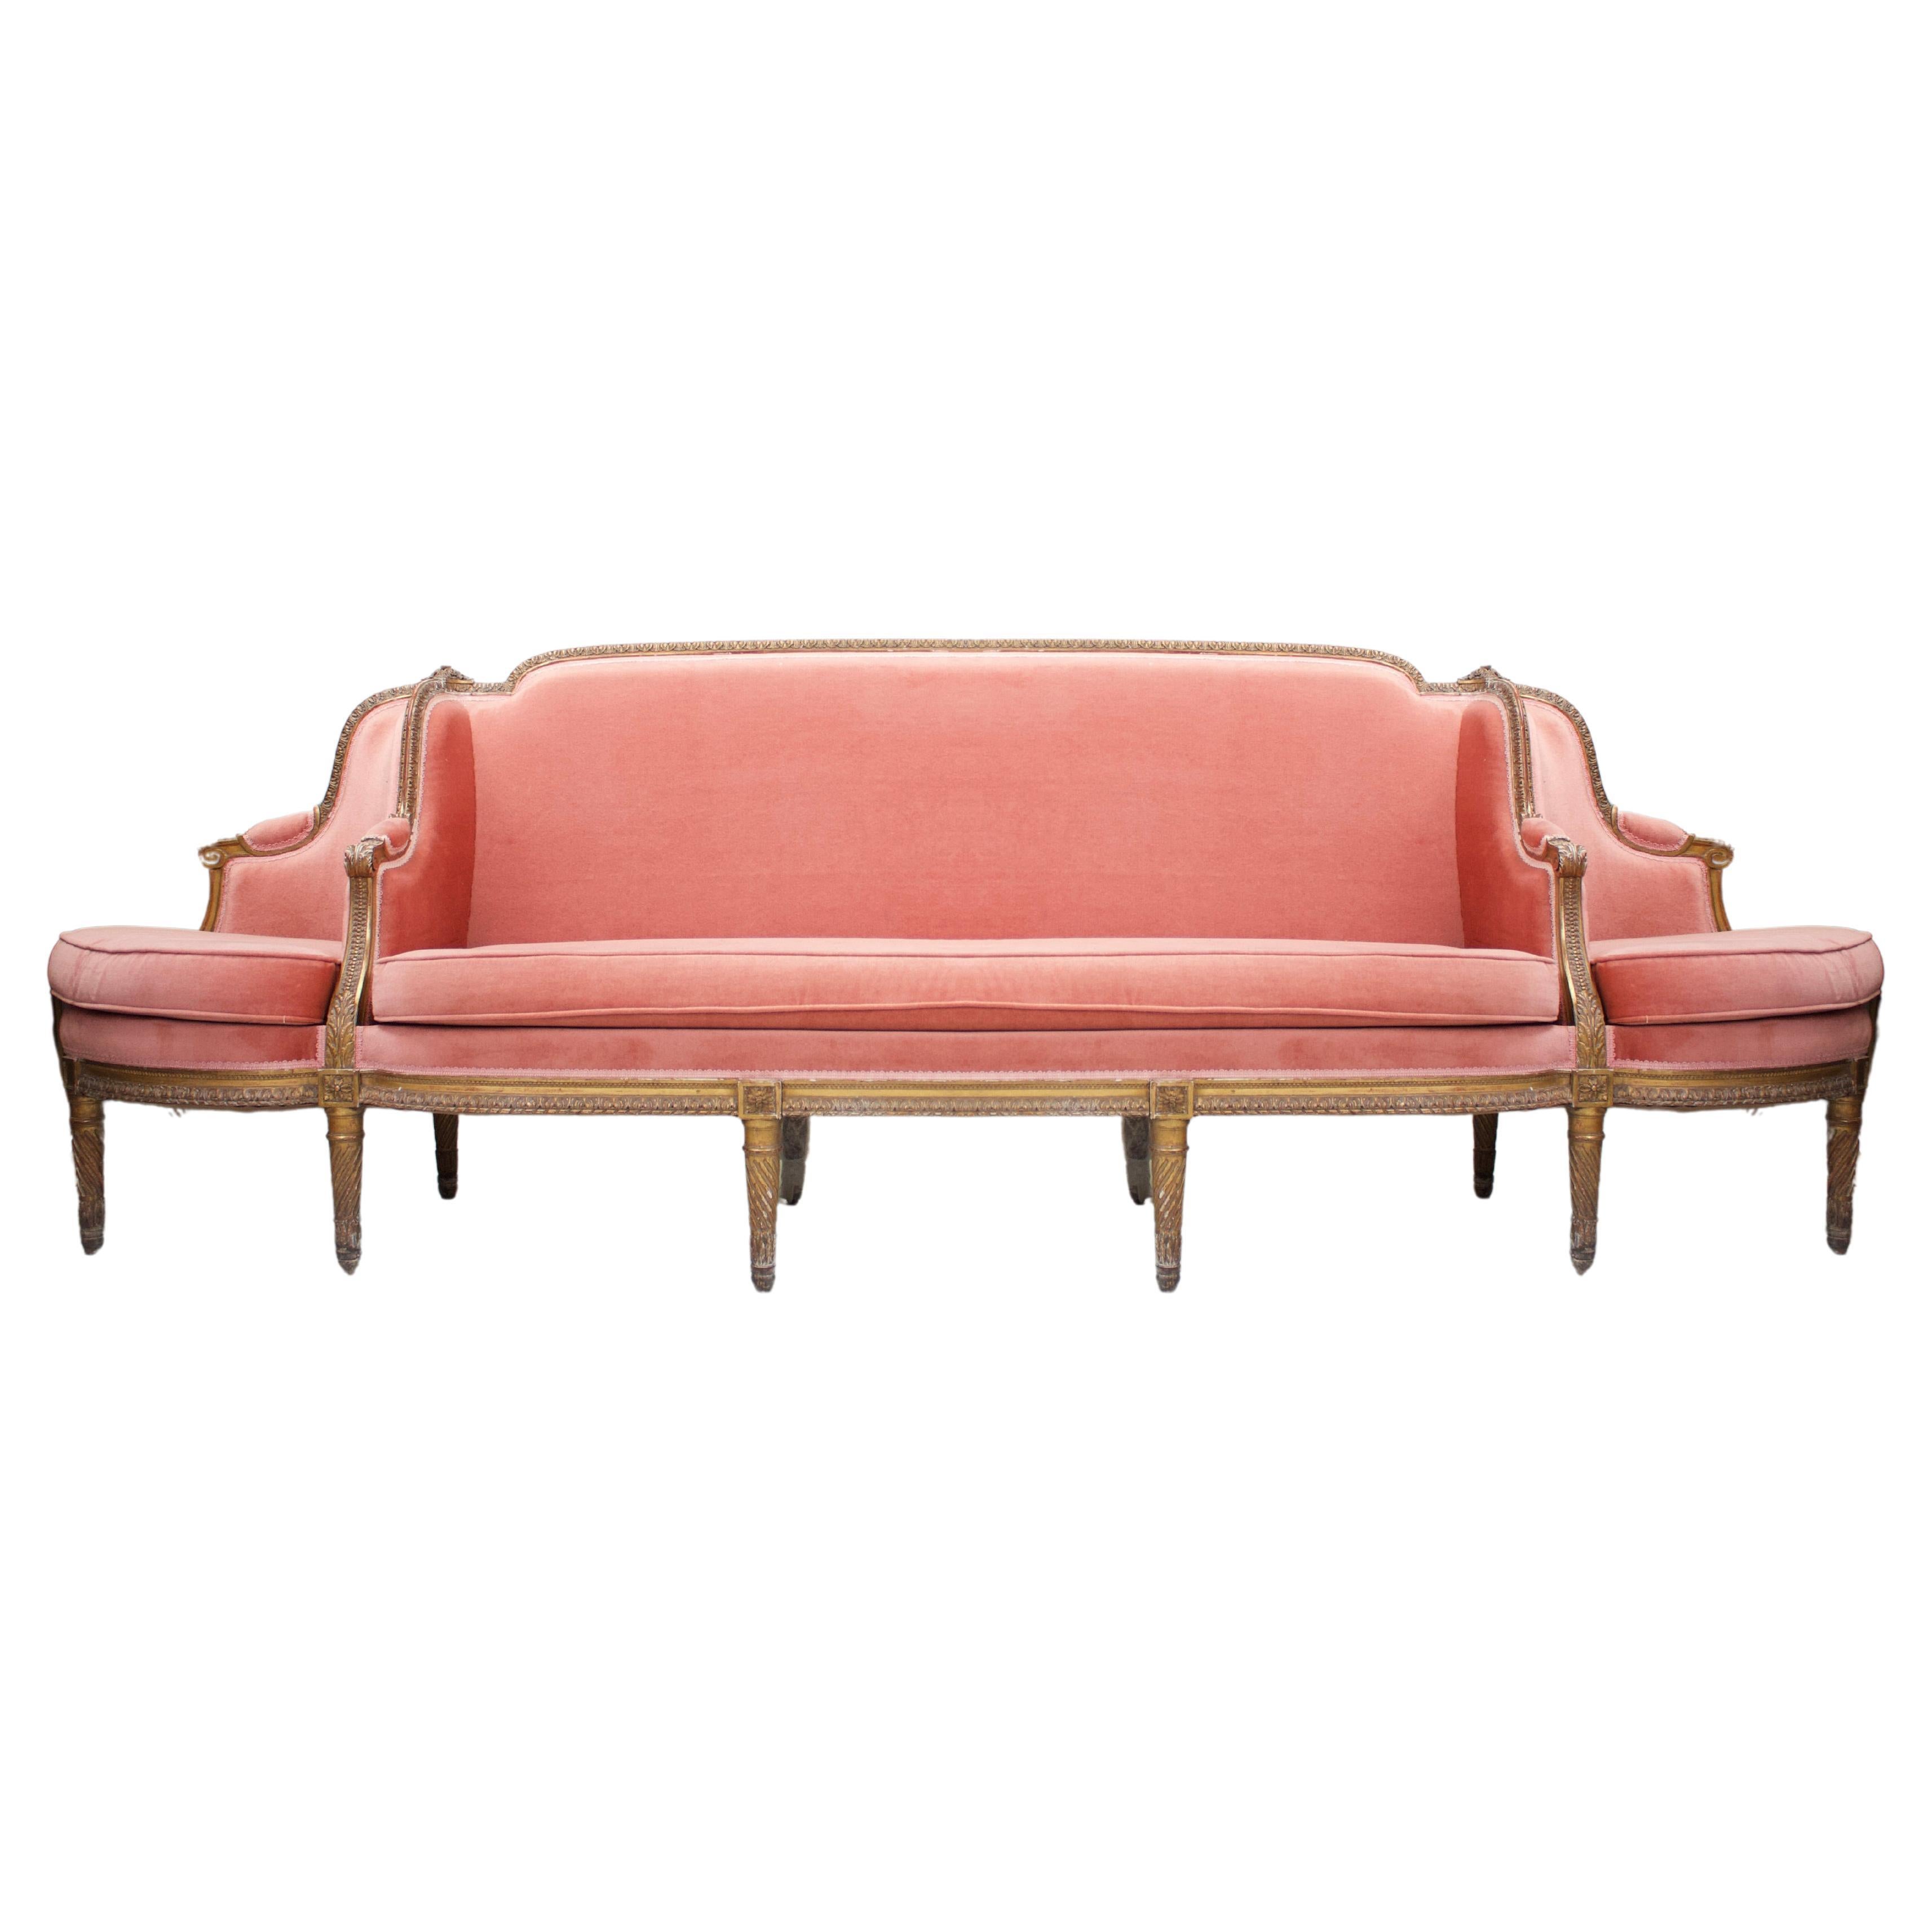 Large Conversation Settee - Canapé à confident - Sofa